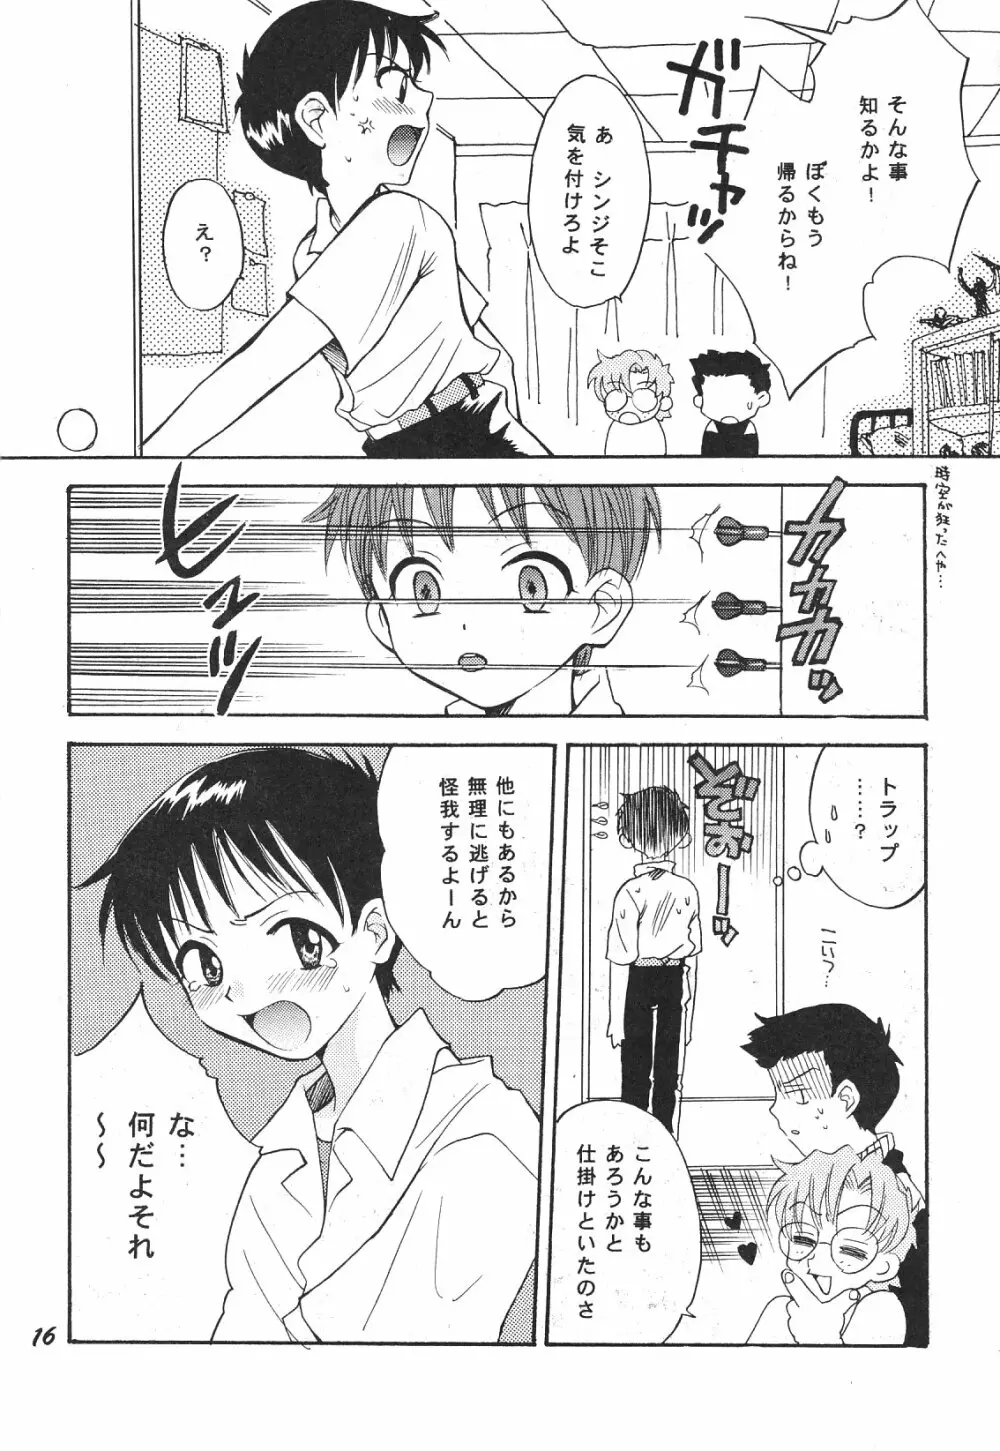 Maniac Juice 女シンジ再録集 '96-'99 - page16